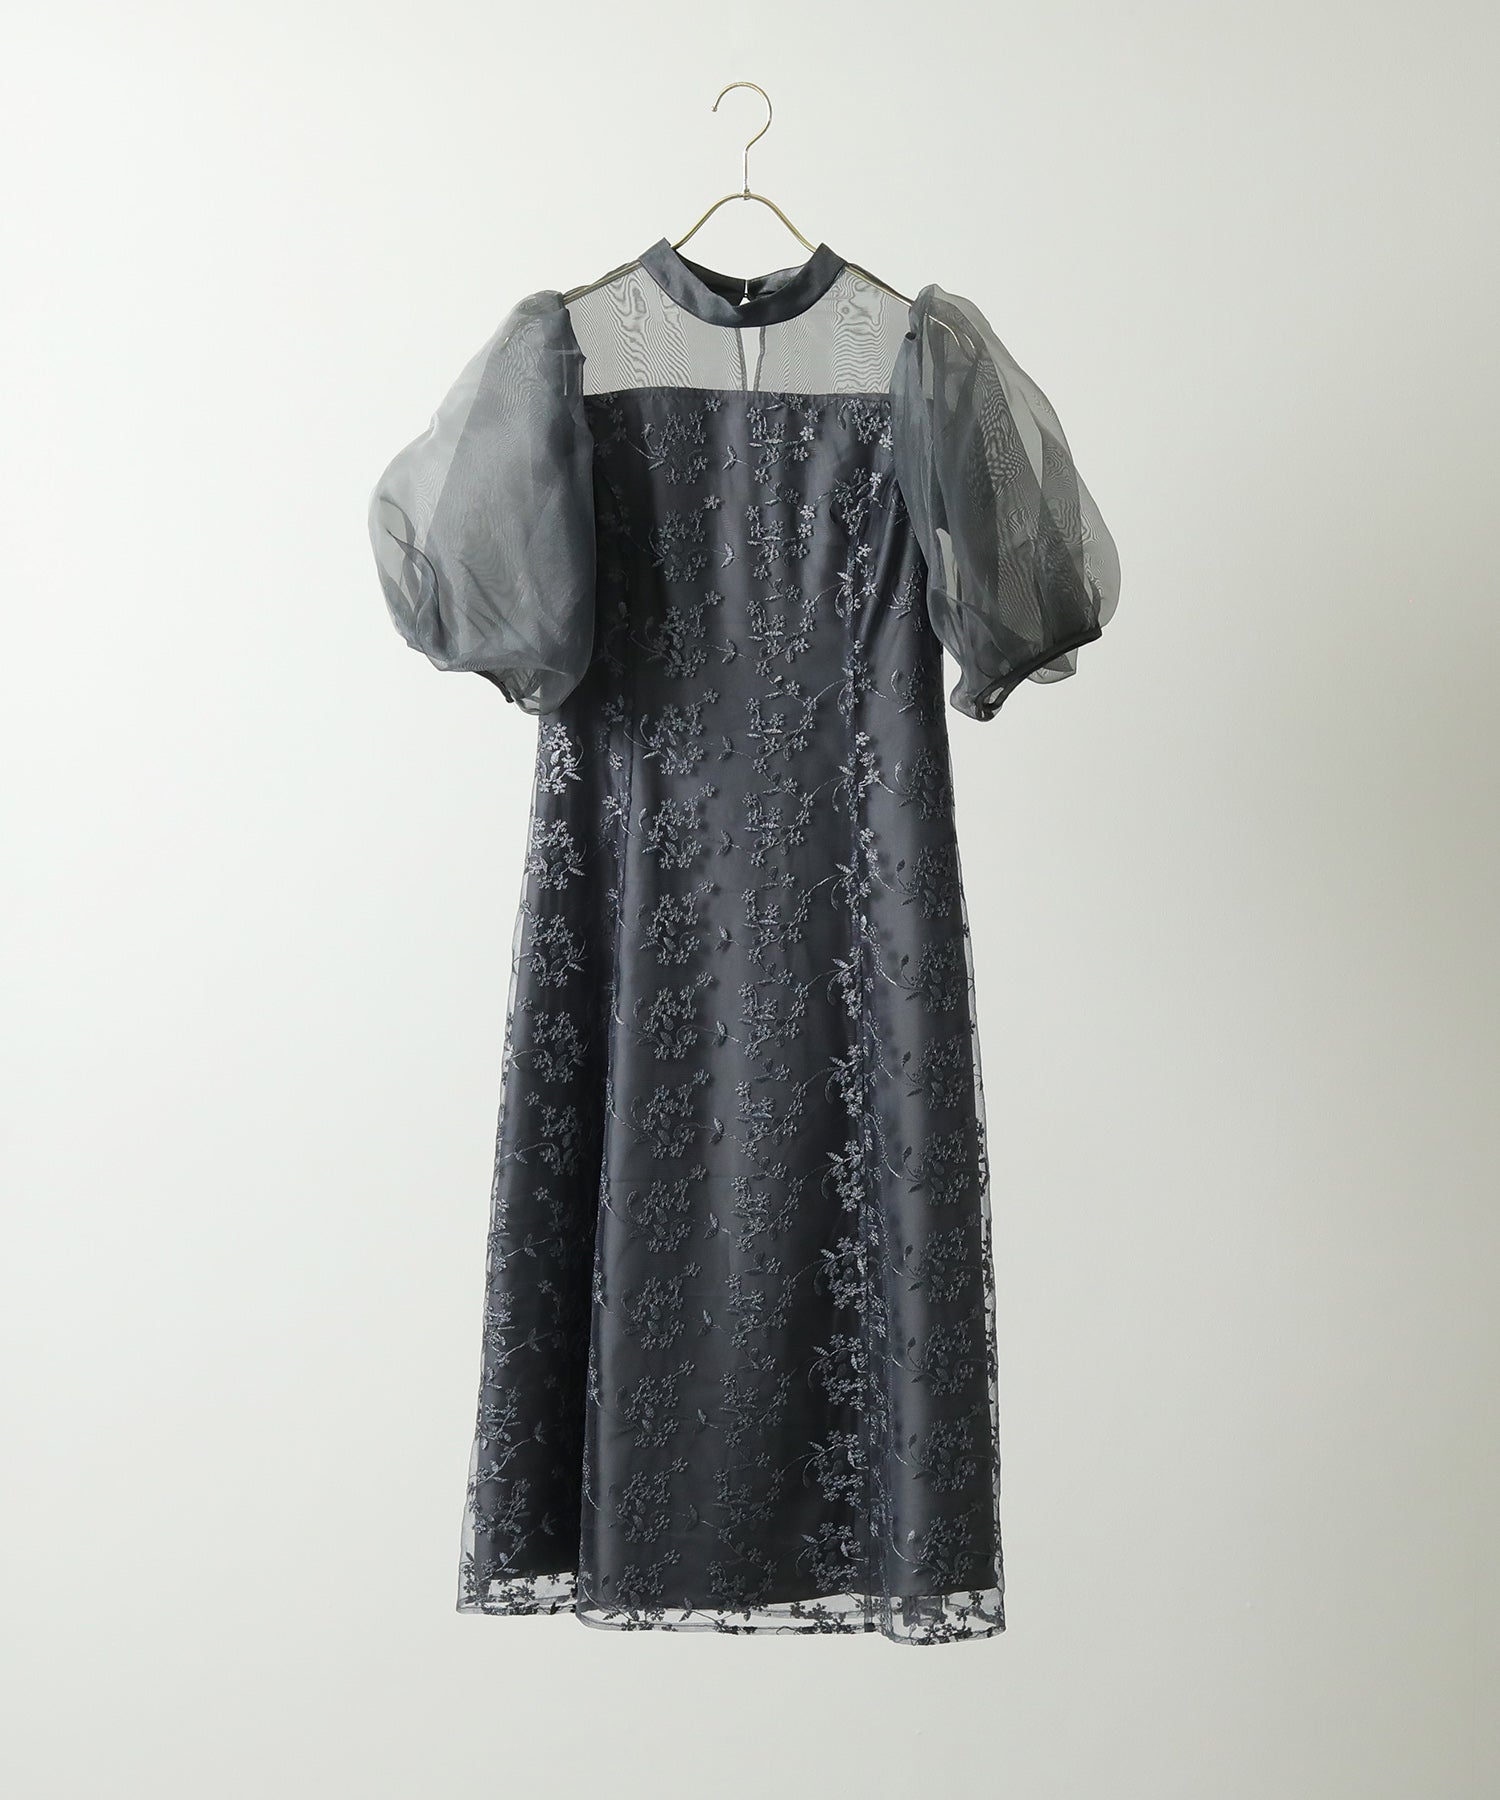 シアー素材 ボリューム袖 刺繍レース ワンピースドレス